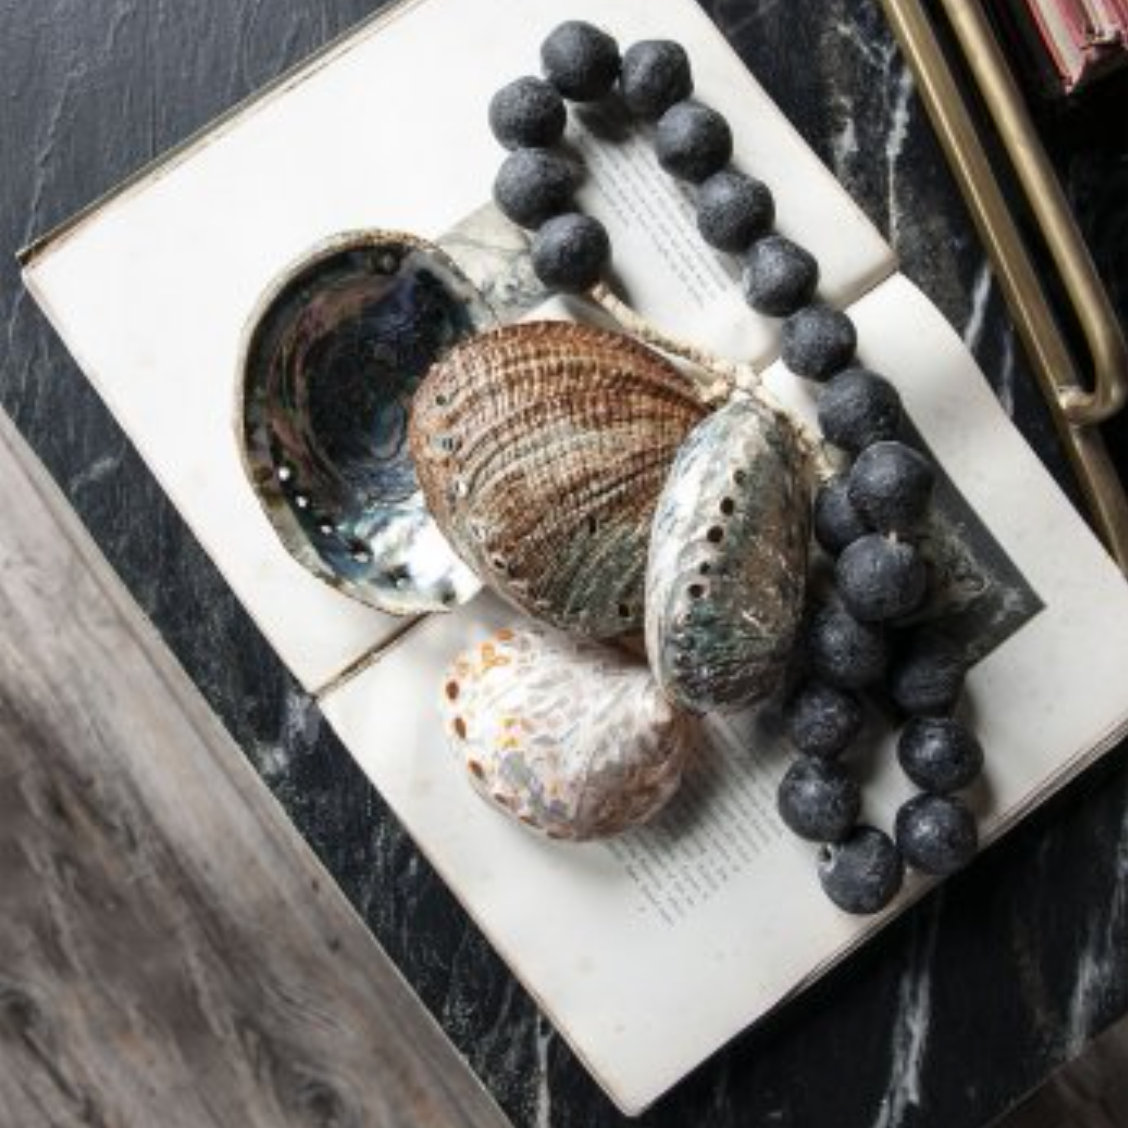 Abalone Shell - Small